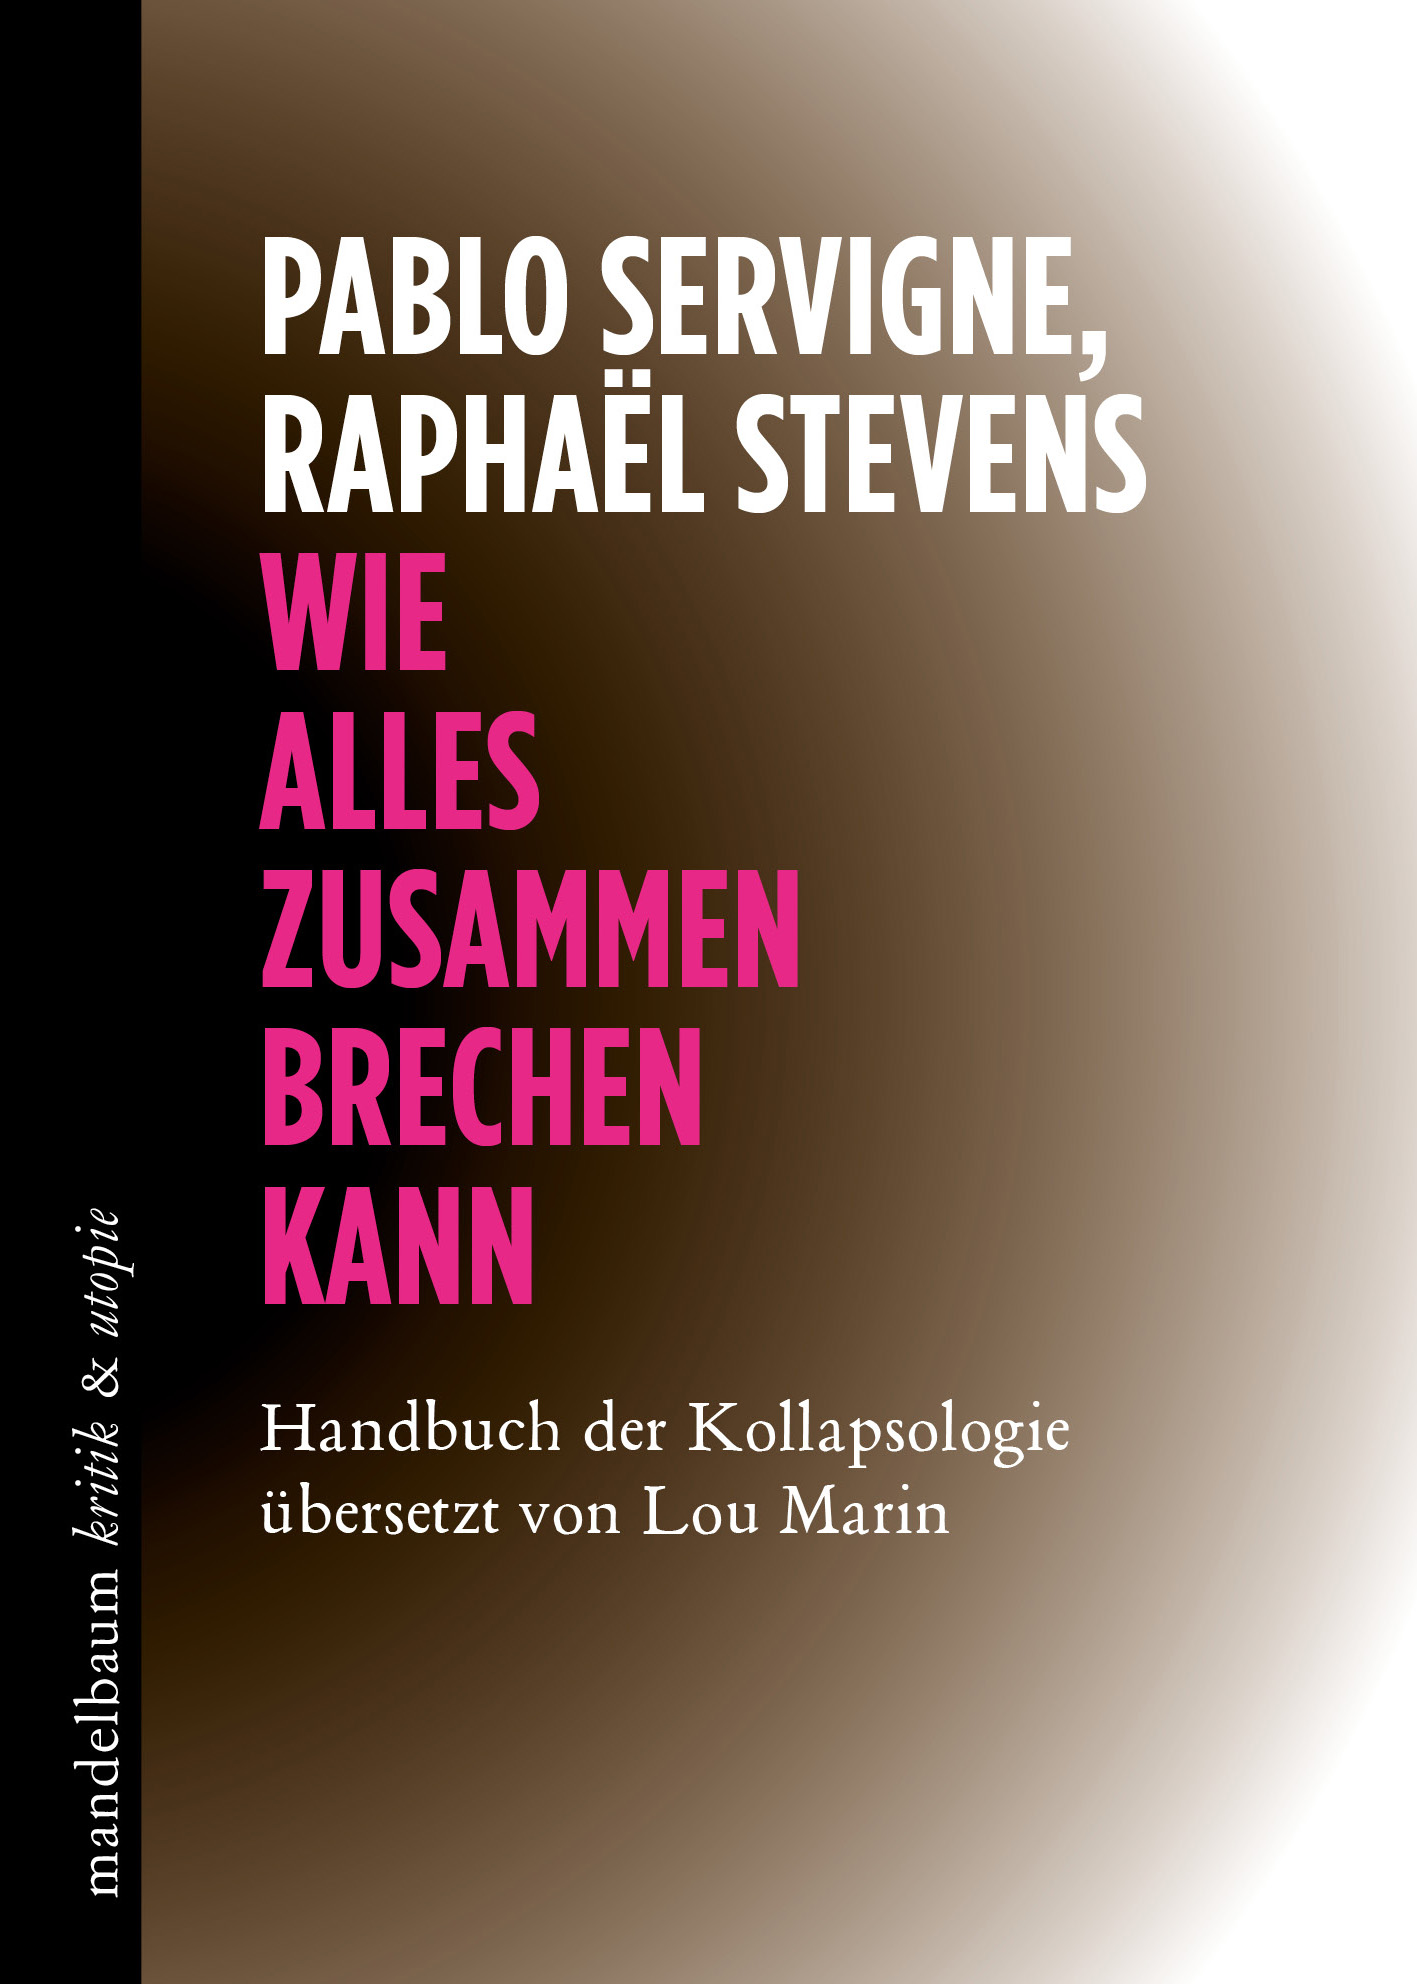 Pablo Servigne, Raphaël Stevens: „Wie alles zusammenbrechen kann. Handbuch der Kollapsologie“. 